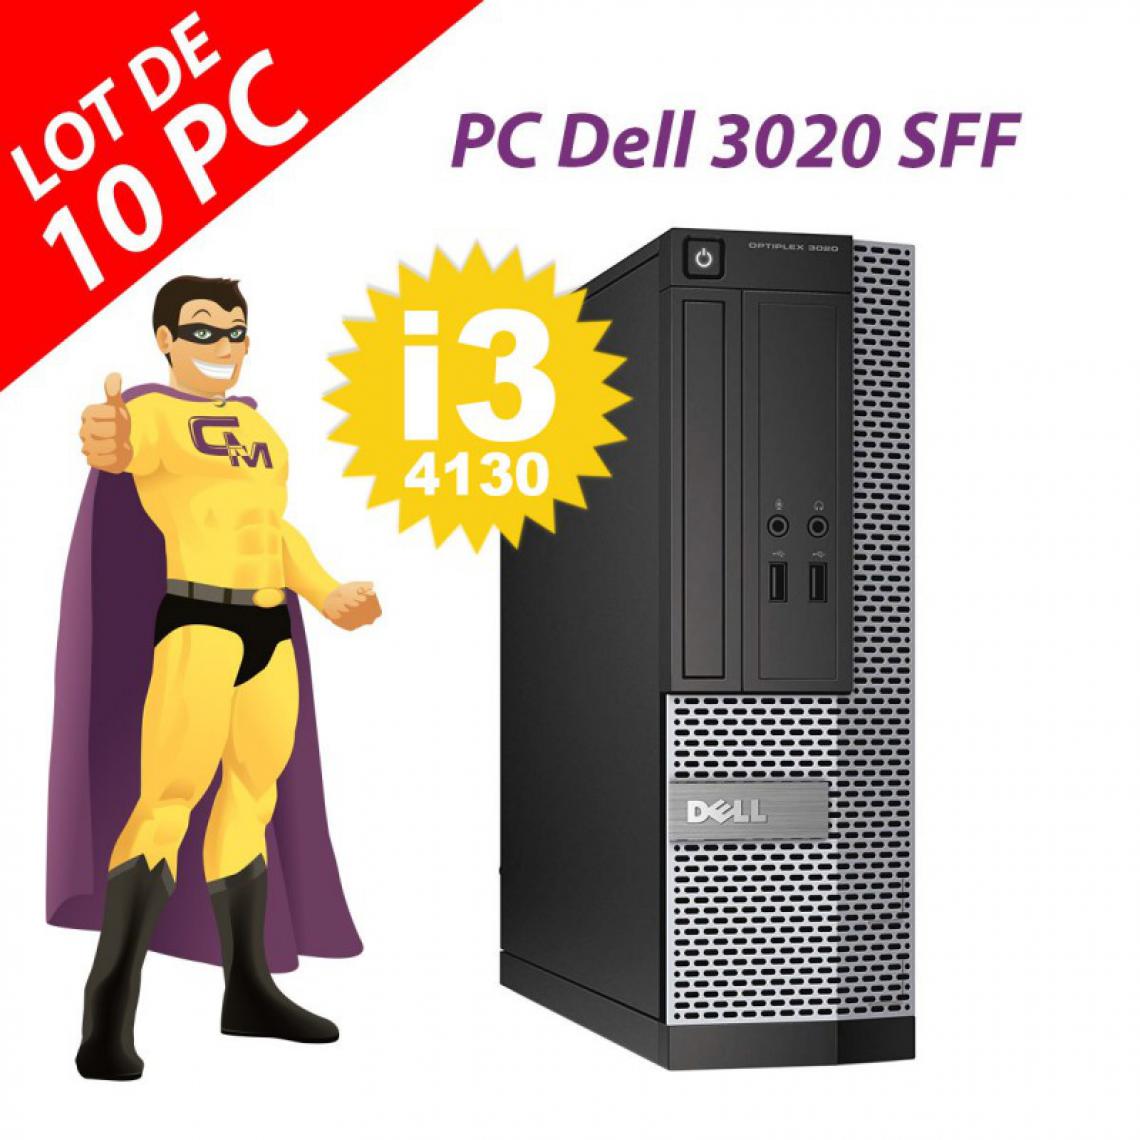 Dell - Lot x10 PC Dell 3020 SFF Intel i3-4130 RAM 4Go Disque Dur 250Go Windows 10 Wifi - PC Fixe